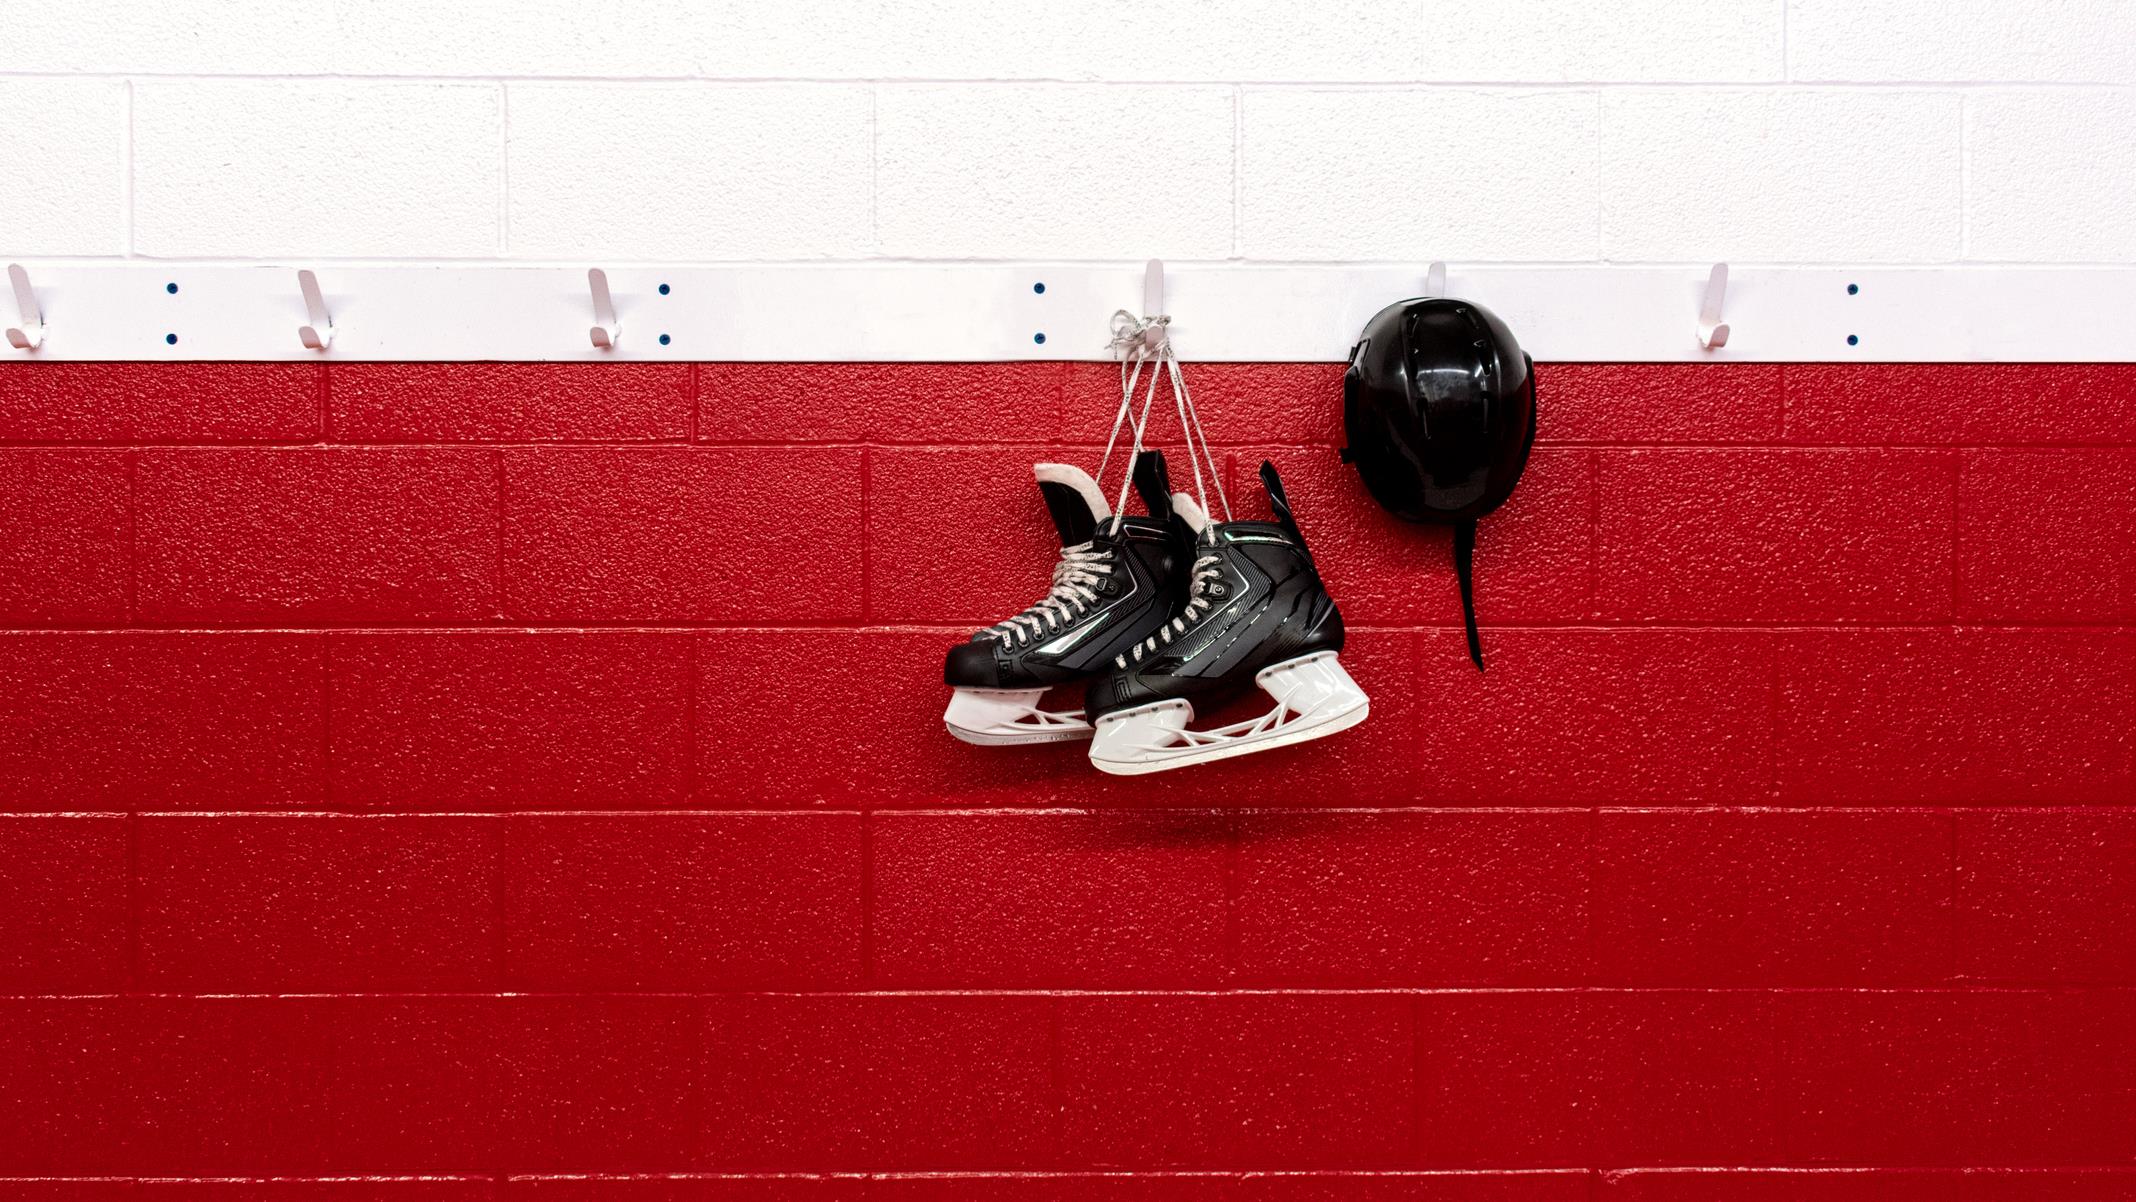 Le cours de hockey francophone aura du temps de glace convenable
Le cours de hockey francophone aura du temps de glace convenable